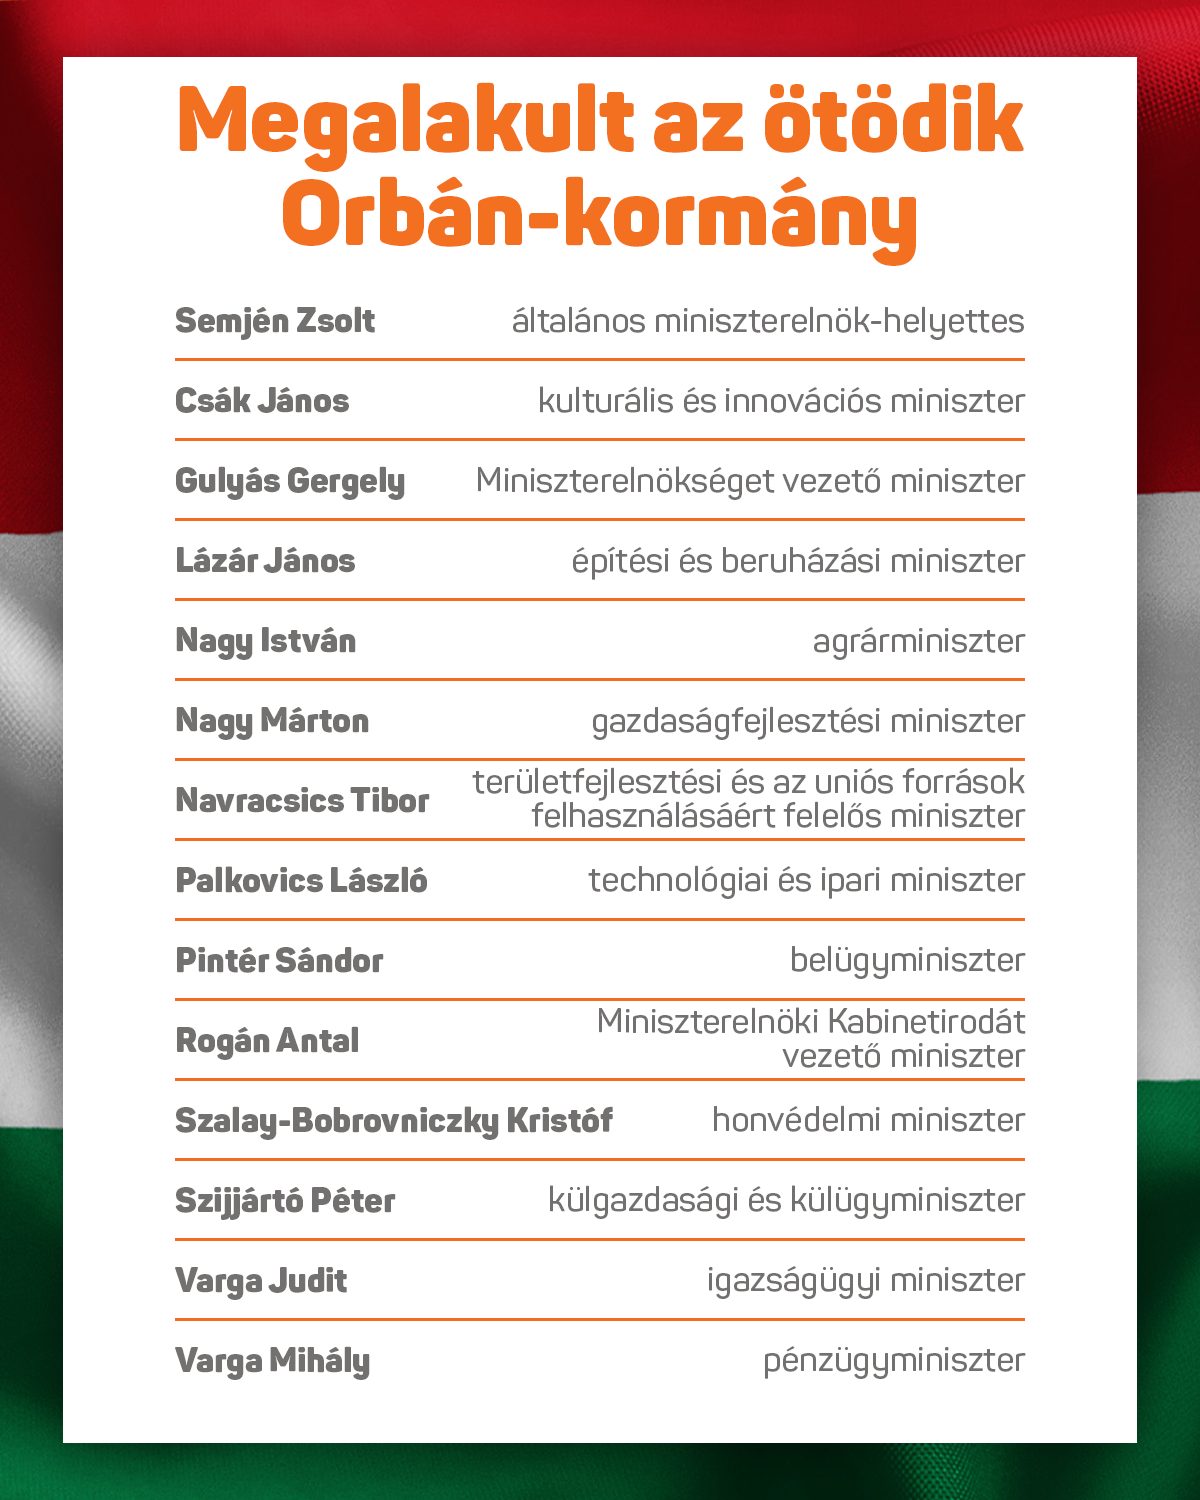 Orbán Viktor bemutatta kormányának tagjait, így hivatalosan is megalakult az ötödik Orbán-kormány.